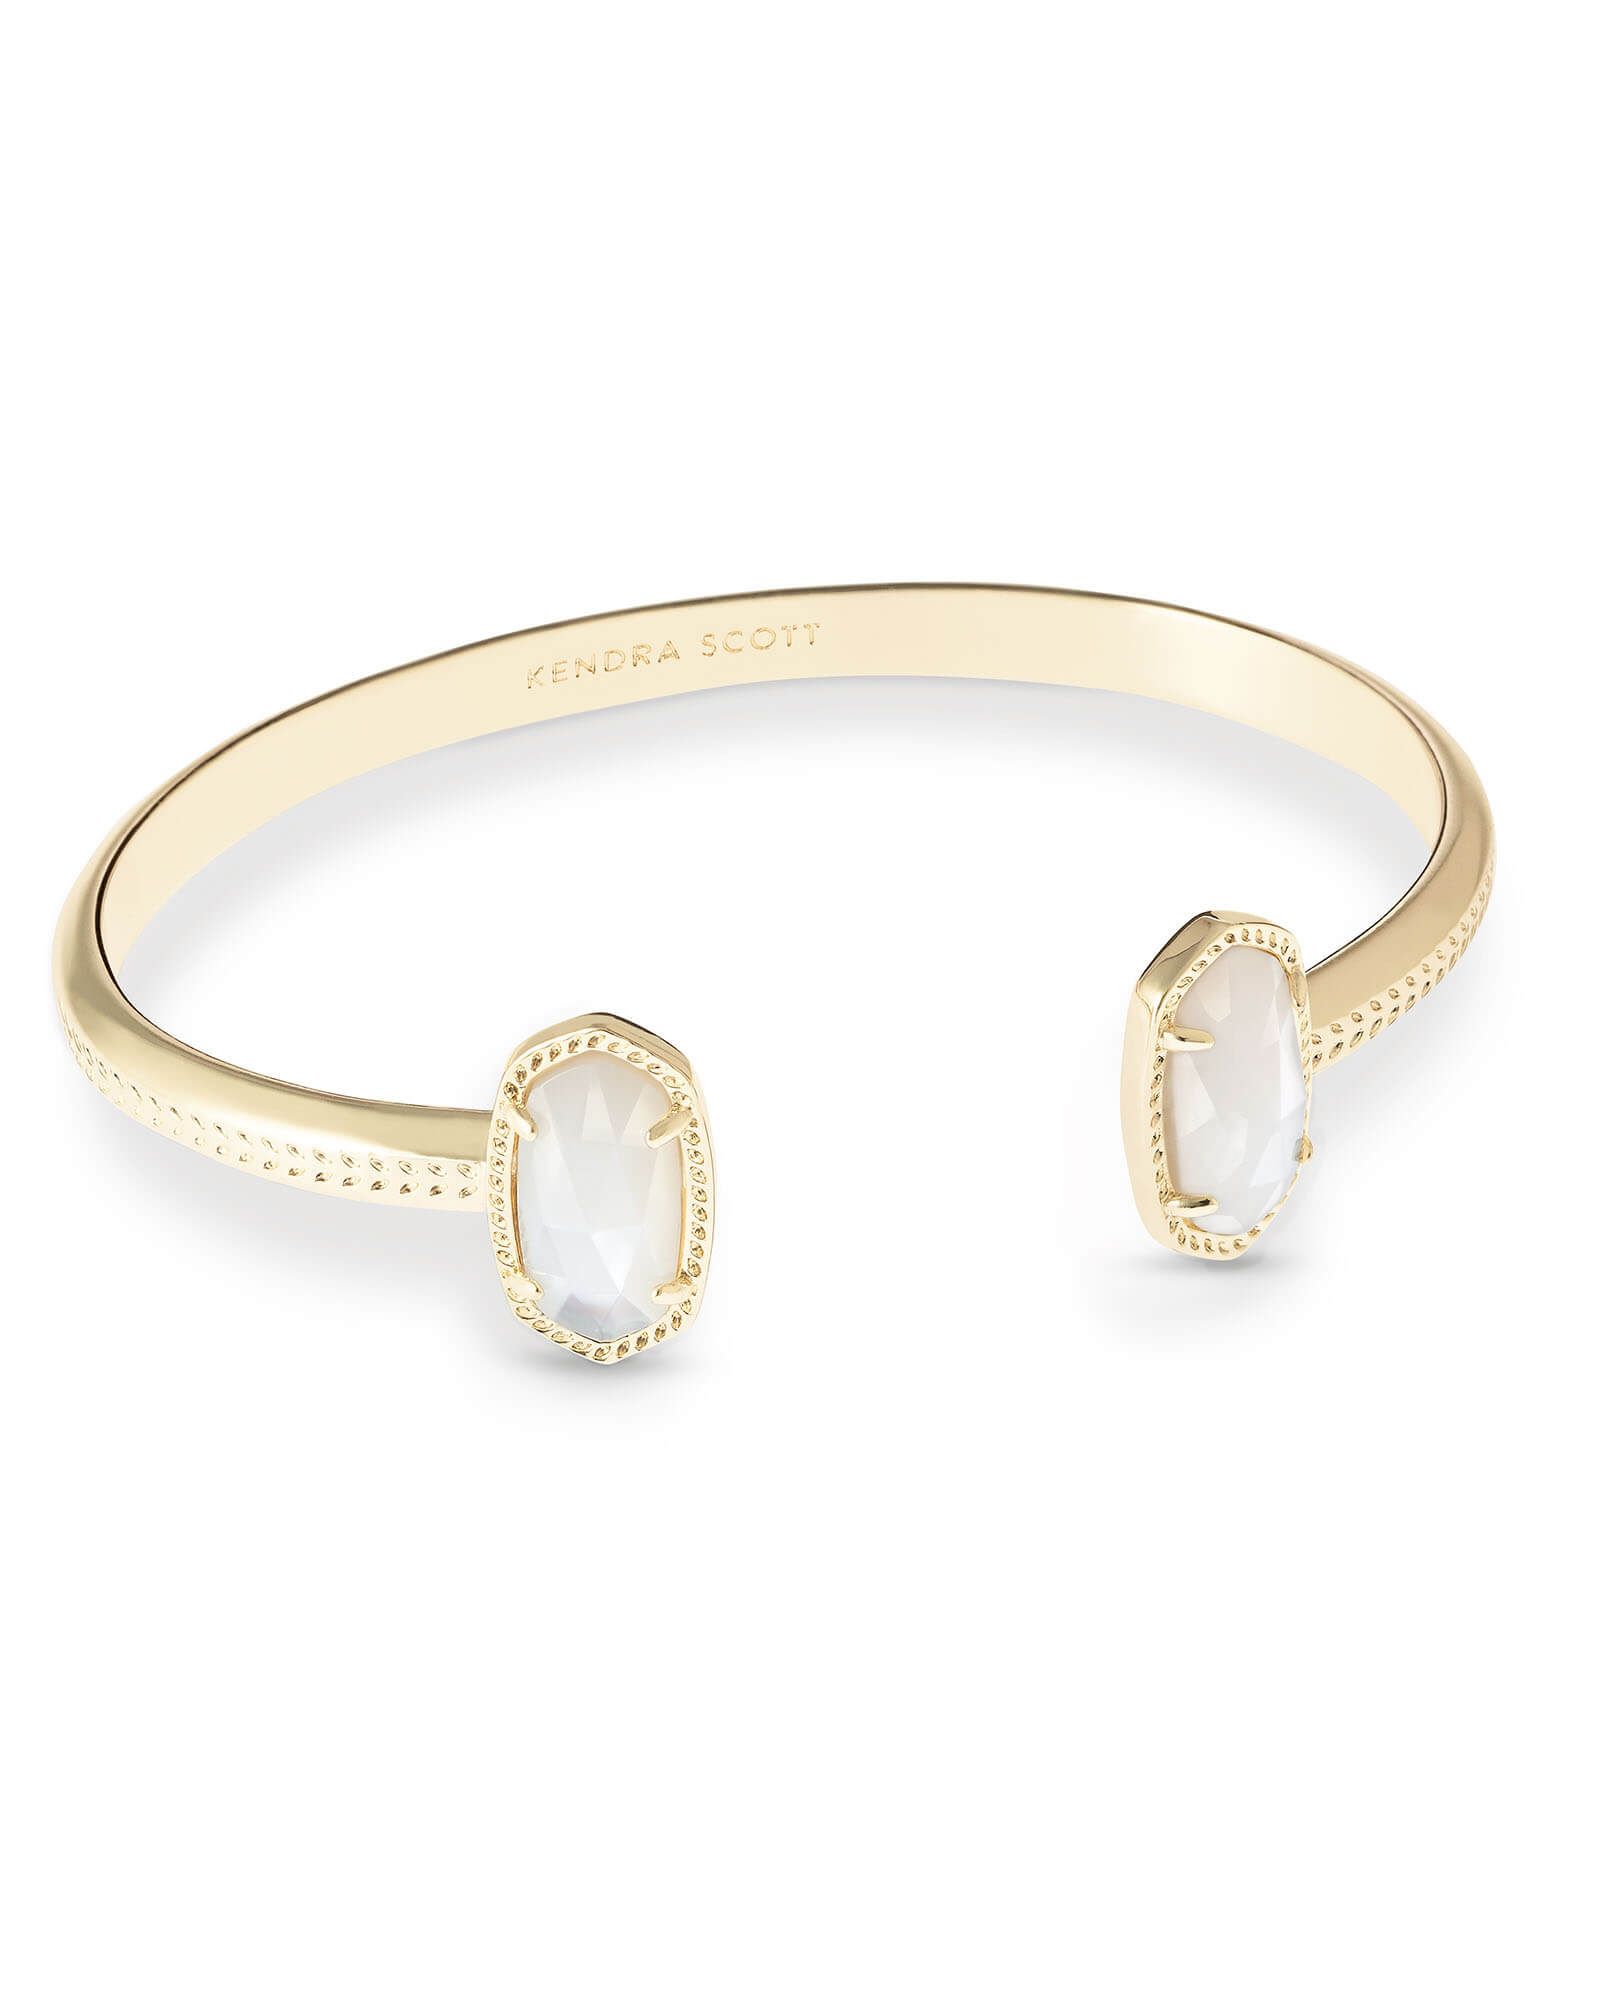 Elton Gold Cuff Bracelet in Ivory Mother Of Pearl | Kendra Scott | Kendra Scott